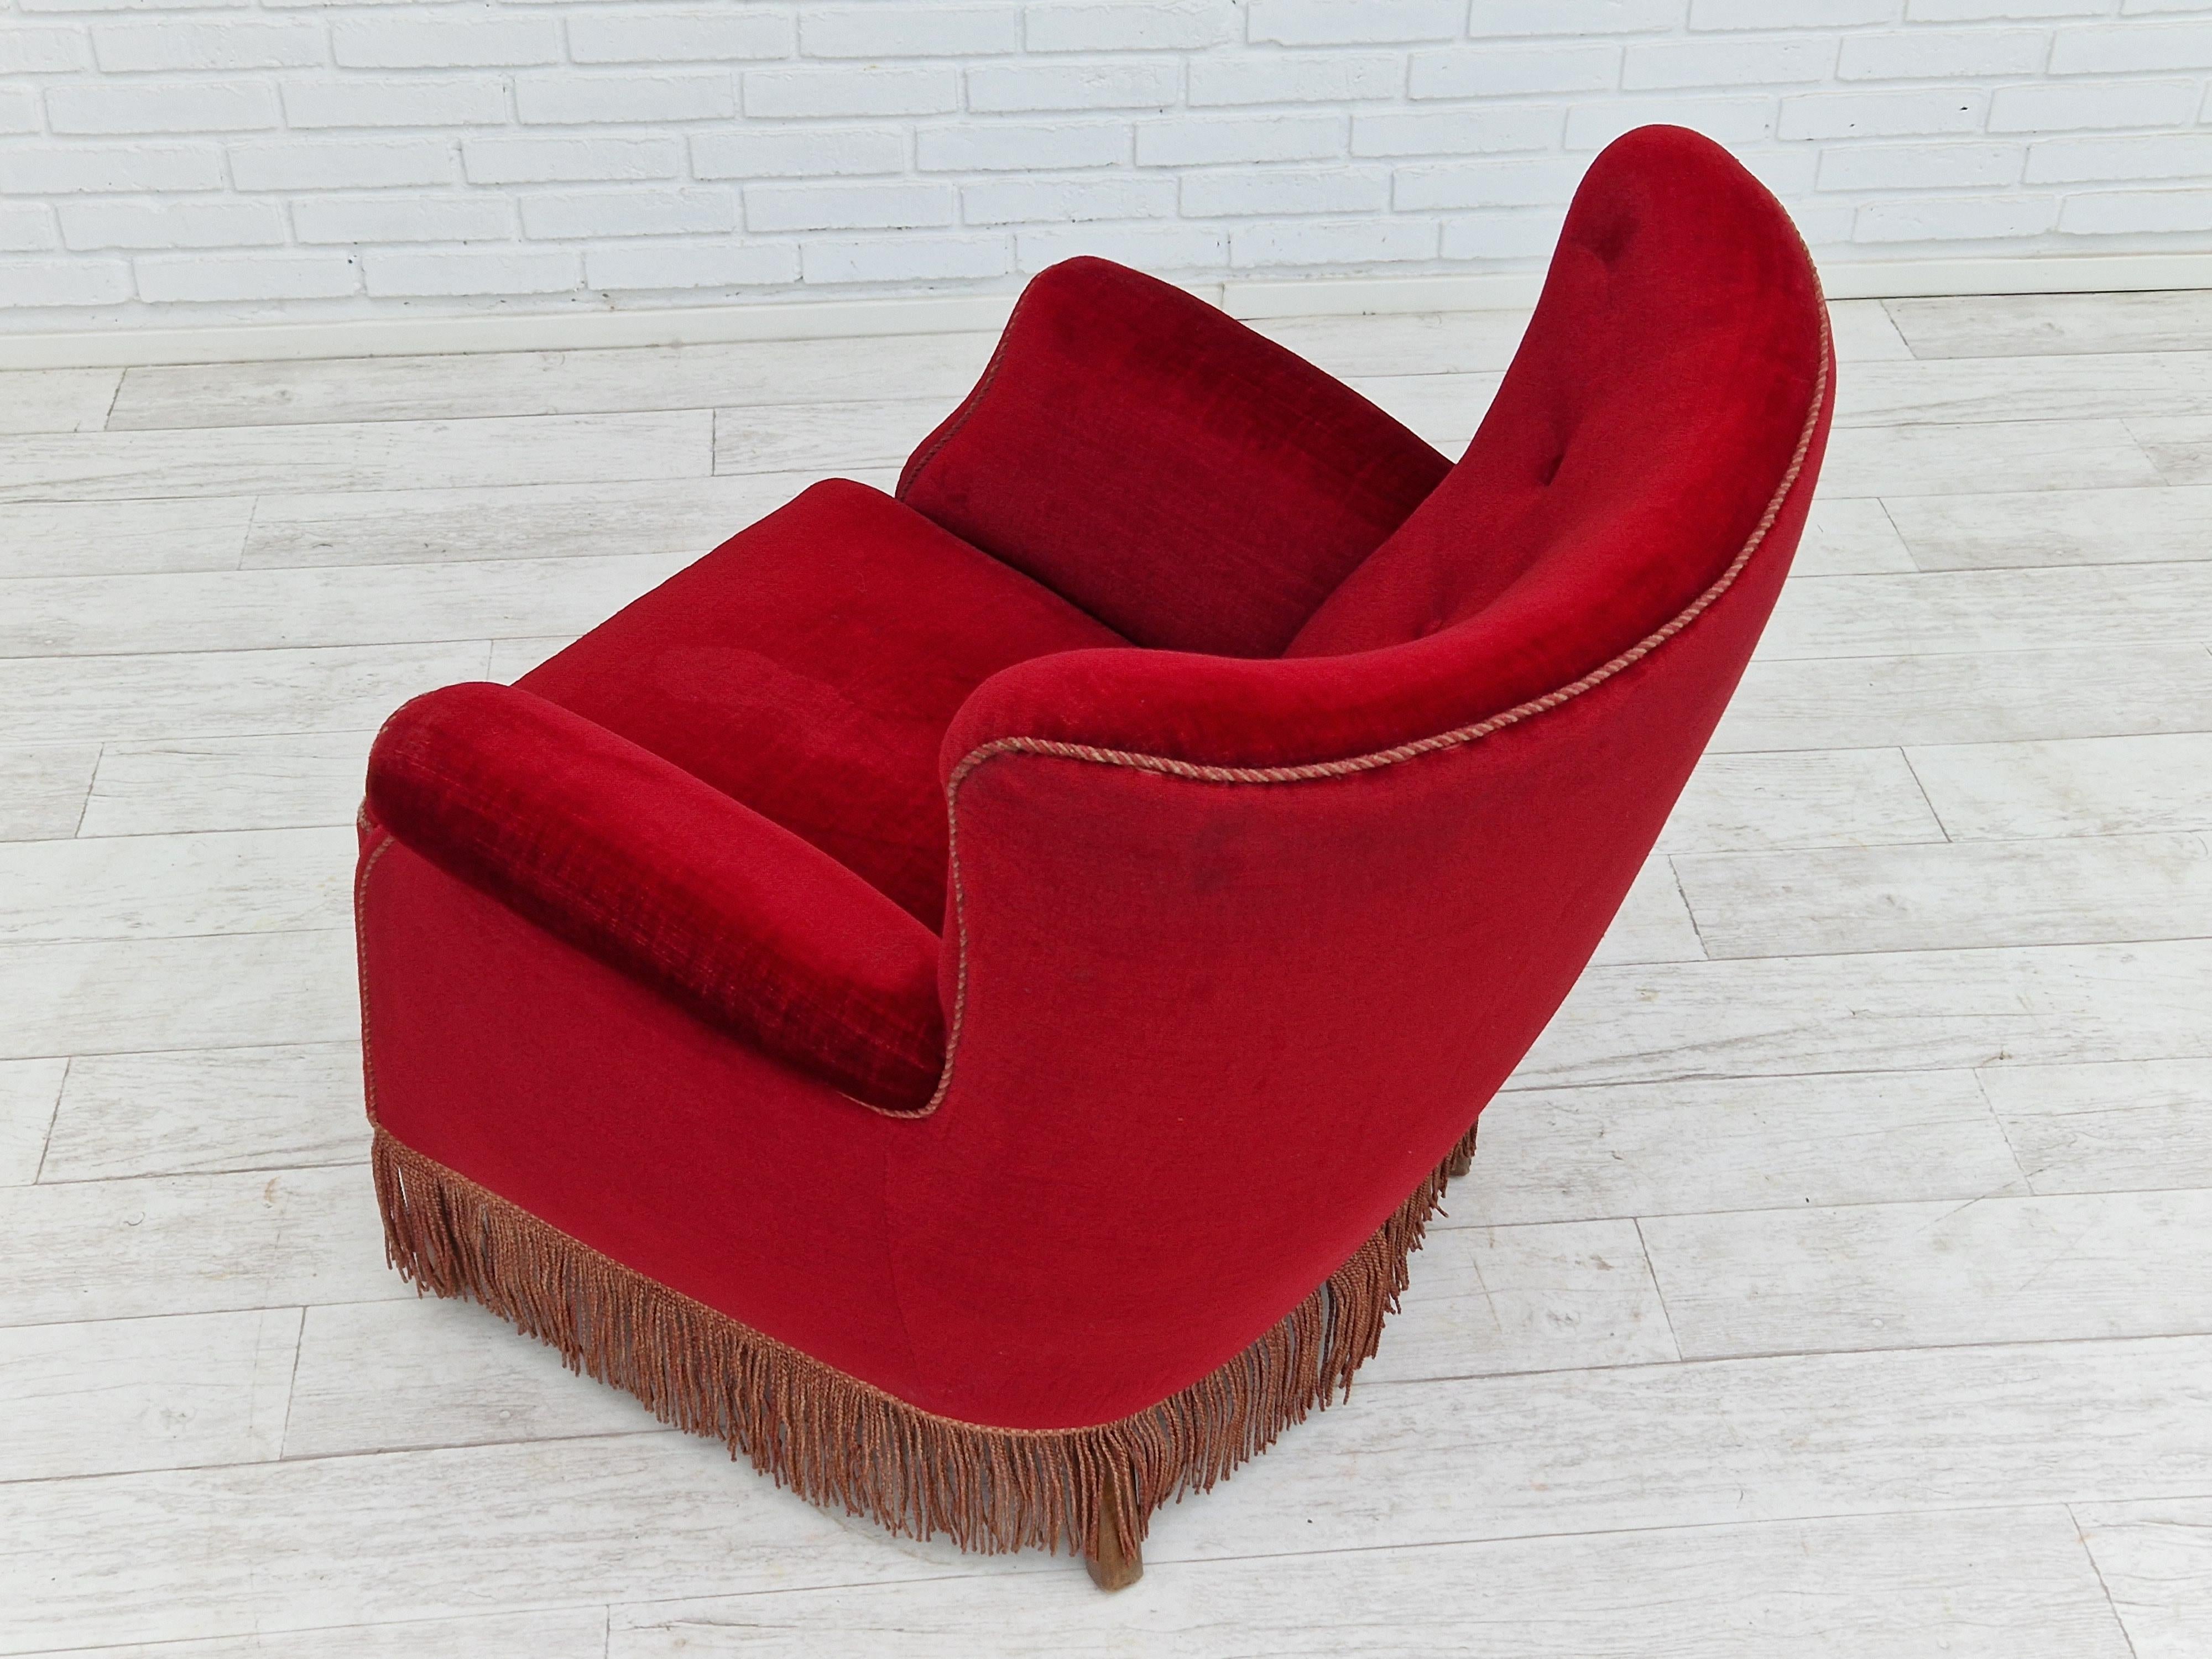 1960s, Danish Vintage Armchair in Cherry-Red Velvet For Sale 9